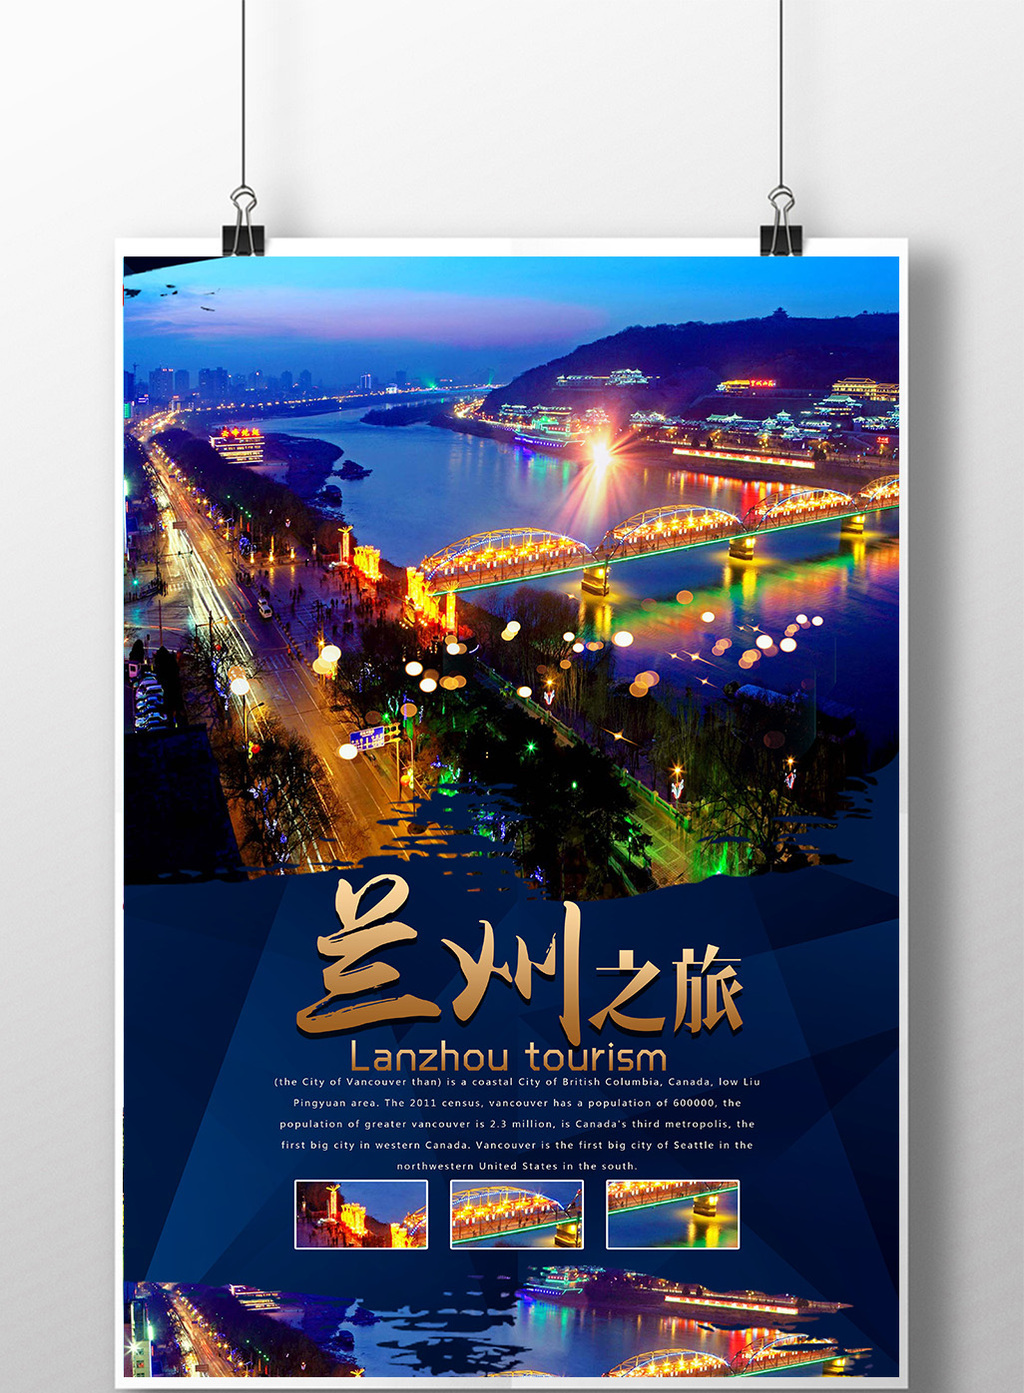 包图 广告设计 海报 【psd】 兰州旅游海报模板下载  上传时间2017-03